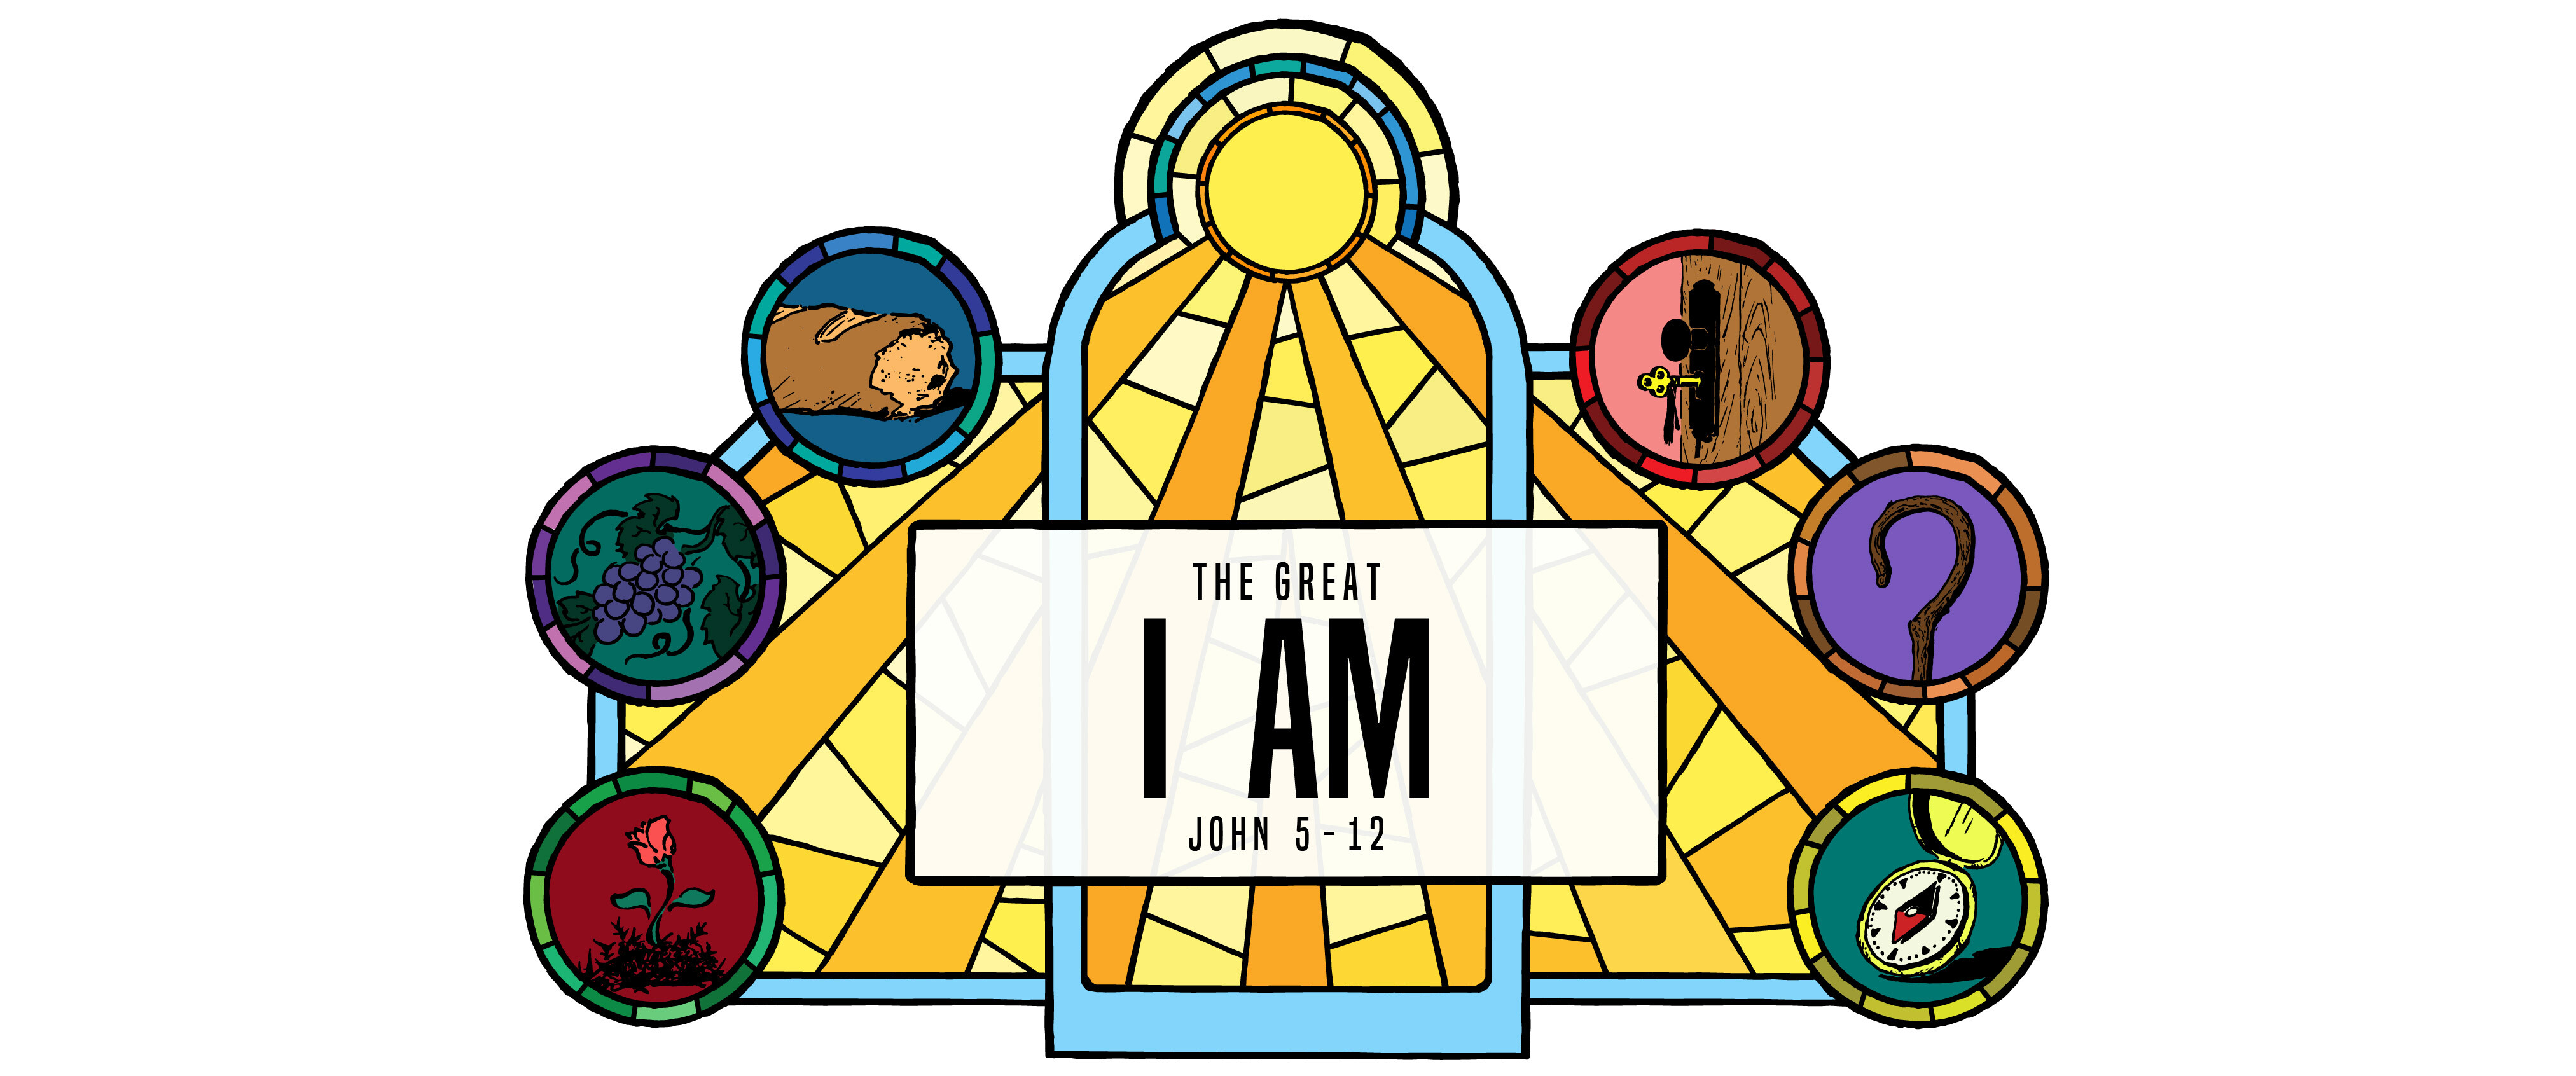 John 5-12: The Great I AM